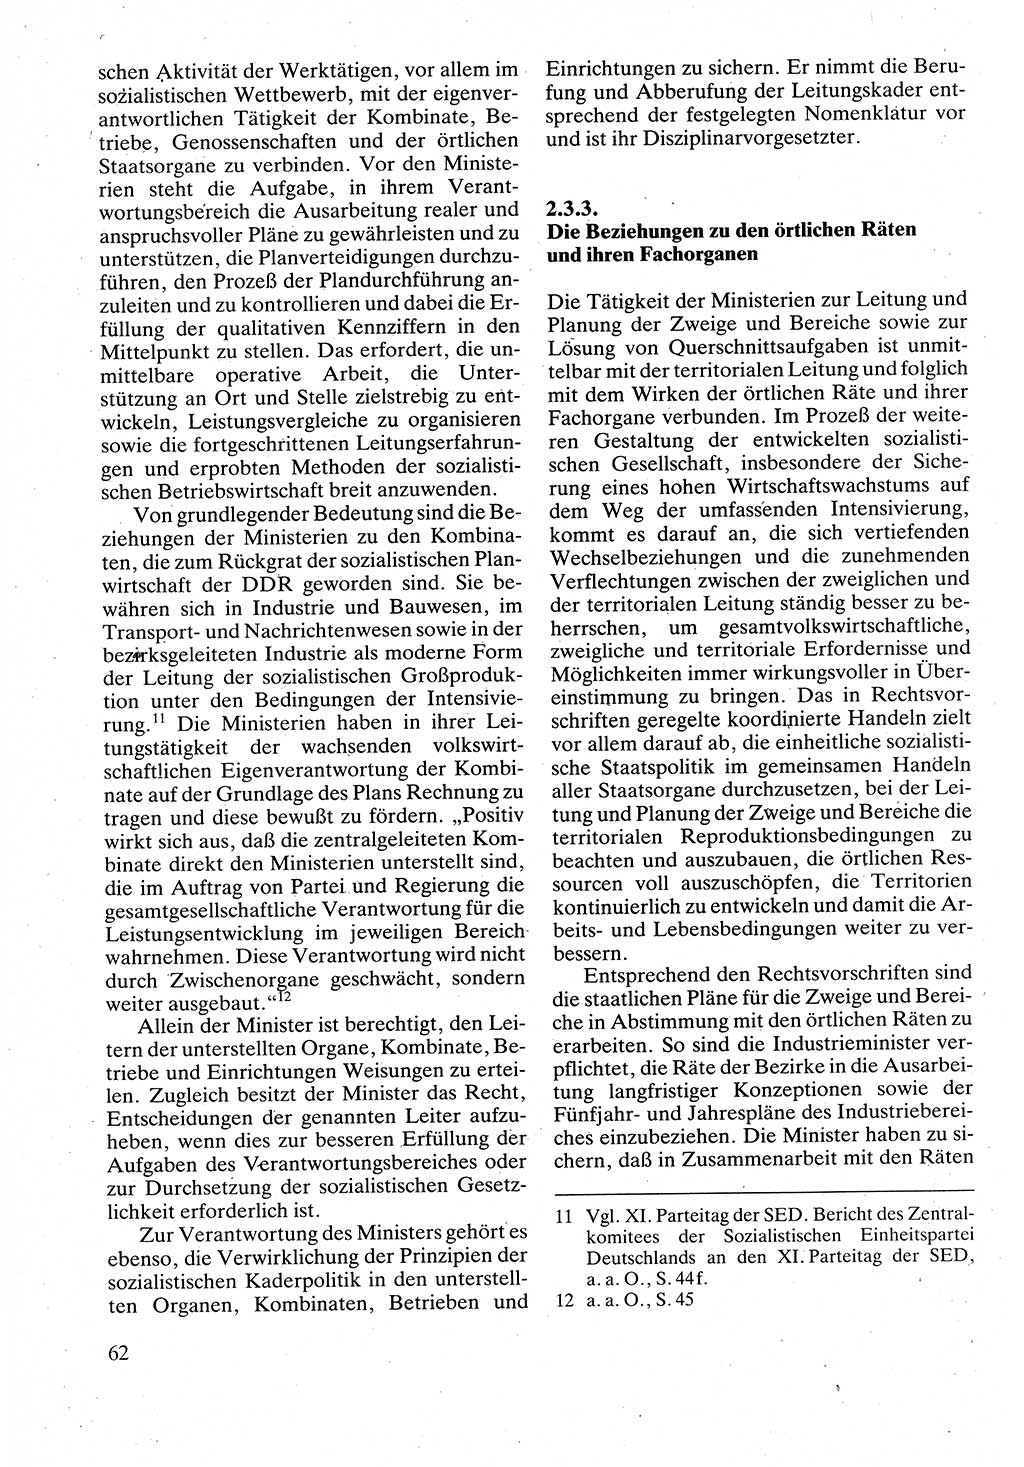 Verwaltungsrecht [Deutsche Demokratische Republik (DDR)], Lehrbuch 1988, Seite 62 (Verw.-R. DDR Lb. 1988, S. 62)